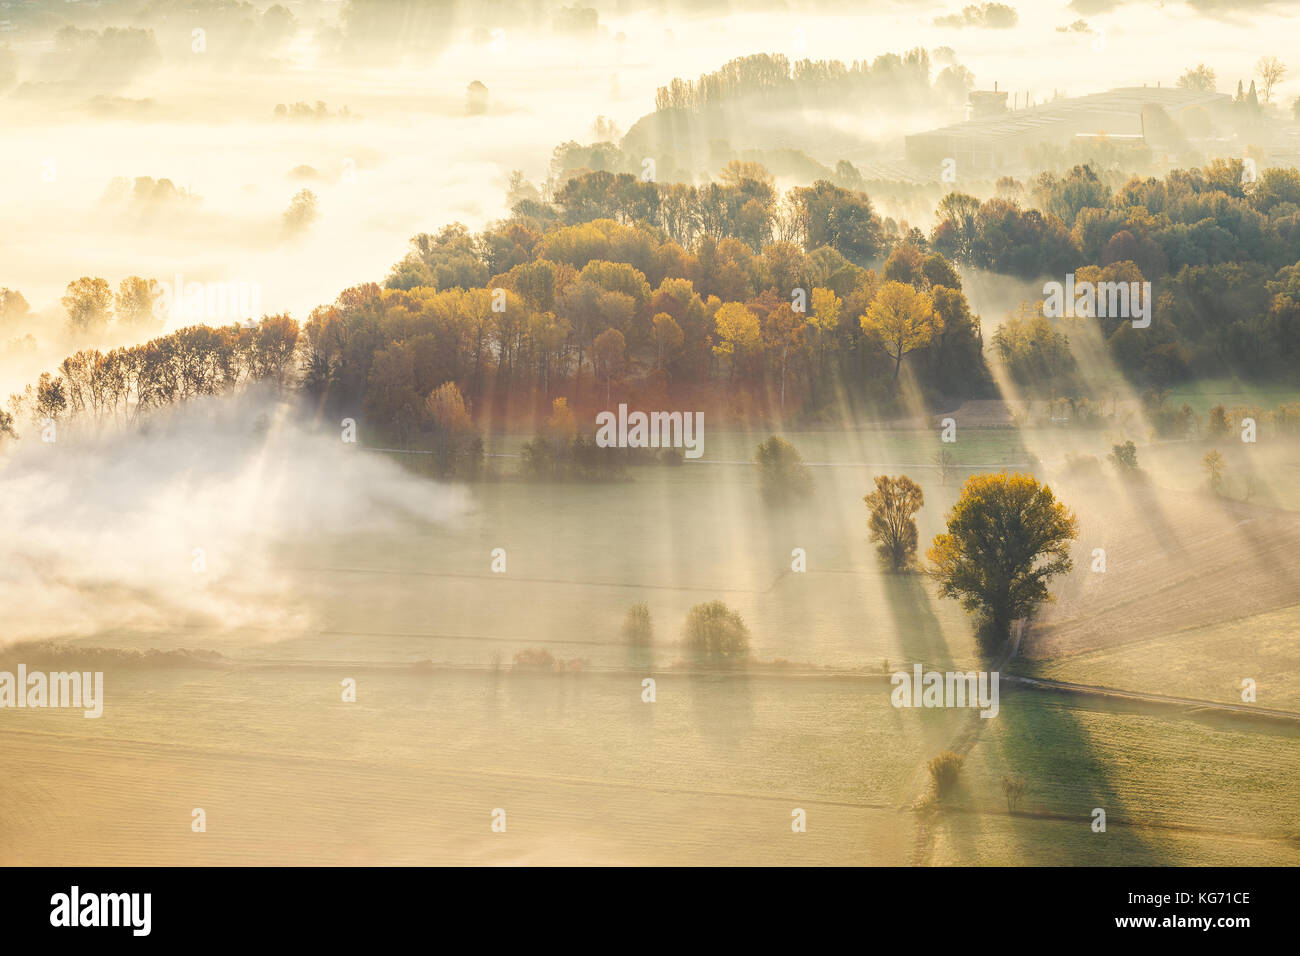 La nebbia e la nebbia che scorre attraverso gli alberi nella valle vicino al fiume Adda, Airuno, Italia Foto Stock